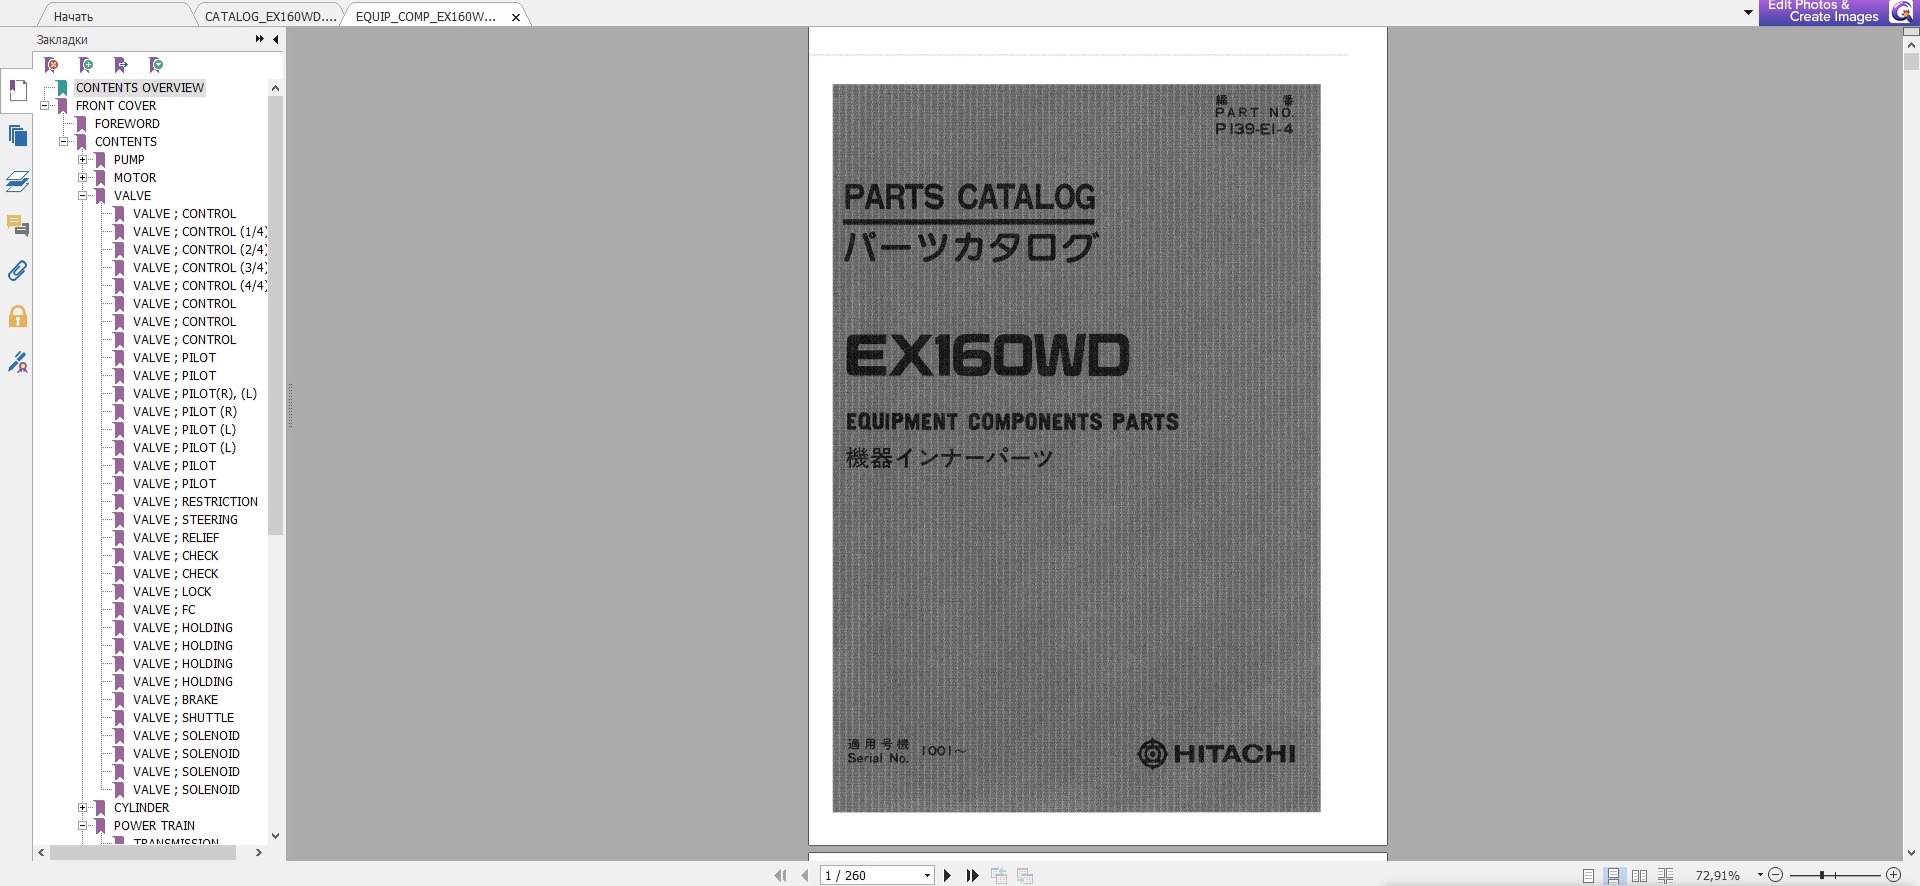 HITACHI EX160WD PARTS CATALOG